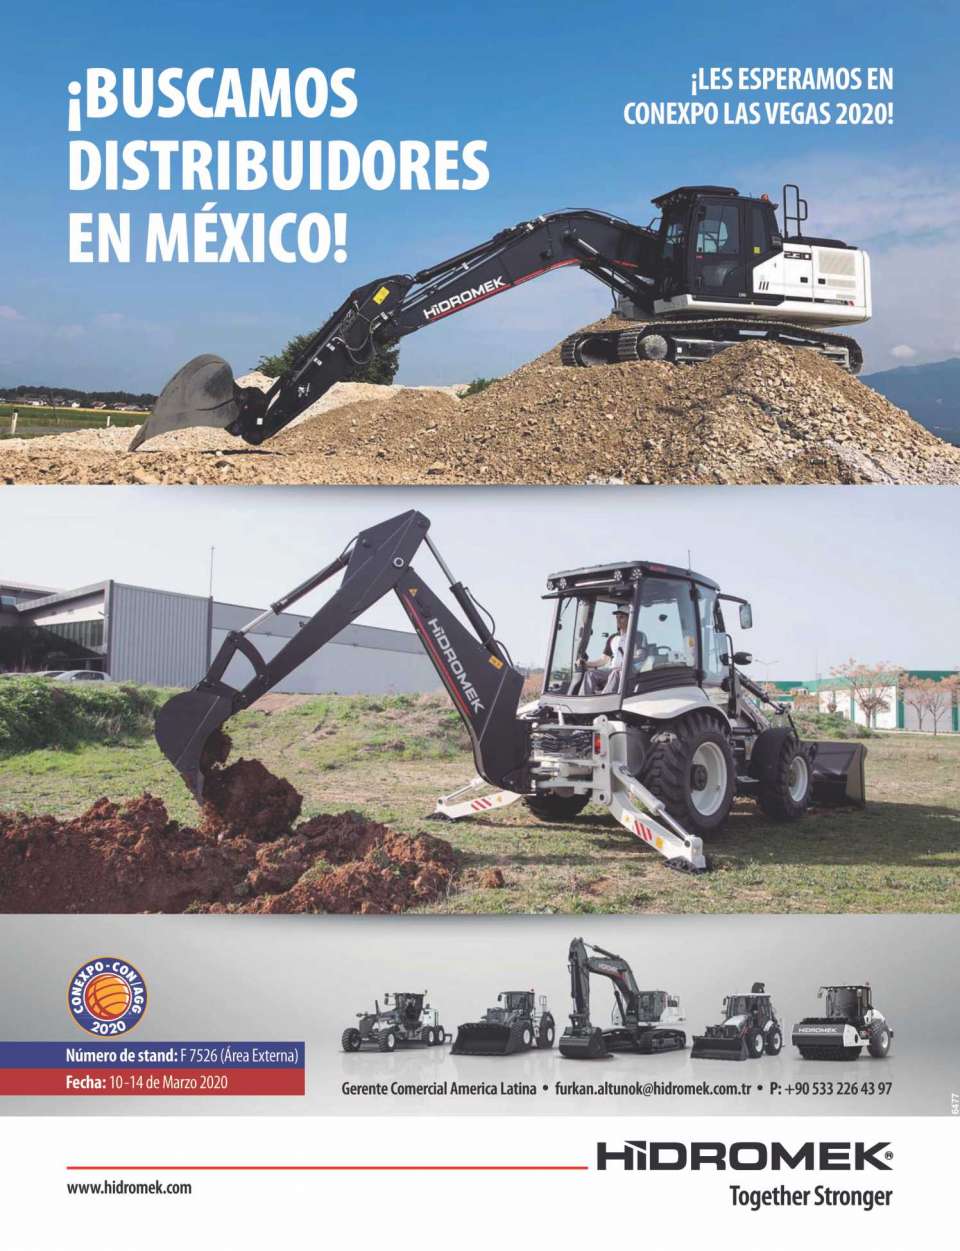 El fabricante turco de maquinaria pesada HIDROMEK busca distribuidores en Mexico. Excavadoras, Retroexcavadoras, Motoconformadoras, Cargadores frontales, Vibrocompactadores.